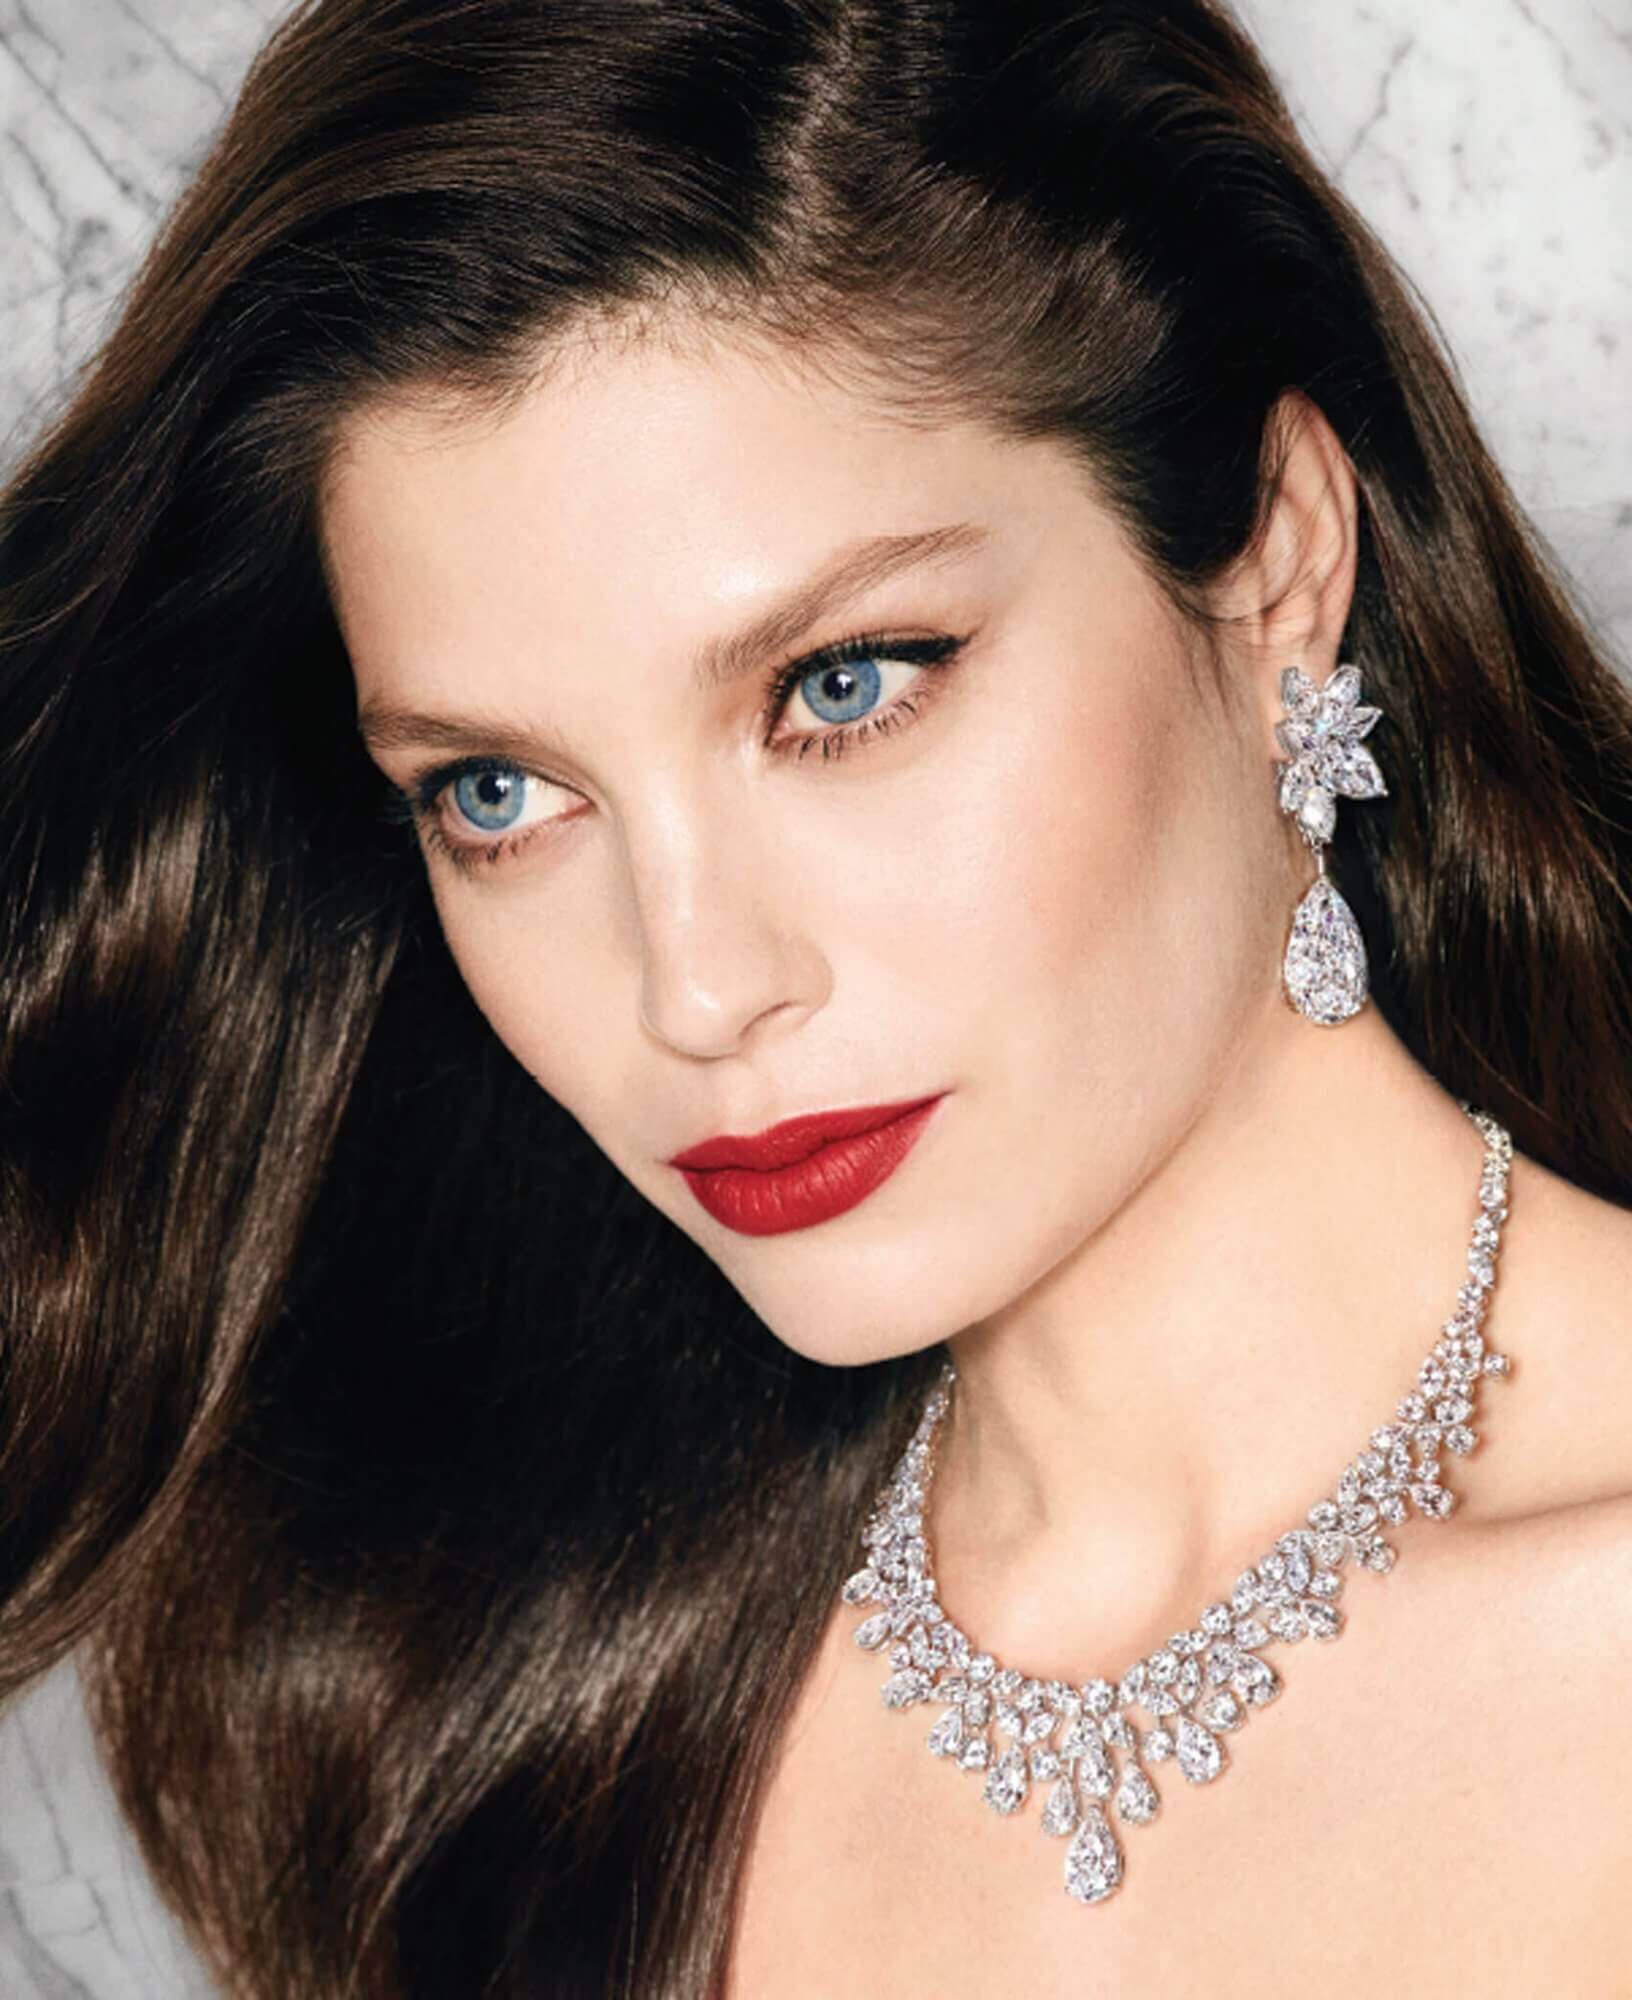 Model wears Graff Diamonds Diamond earrings featuring two 20 carat D Internally Flawless pear shape diamond drops